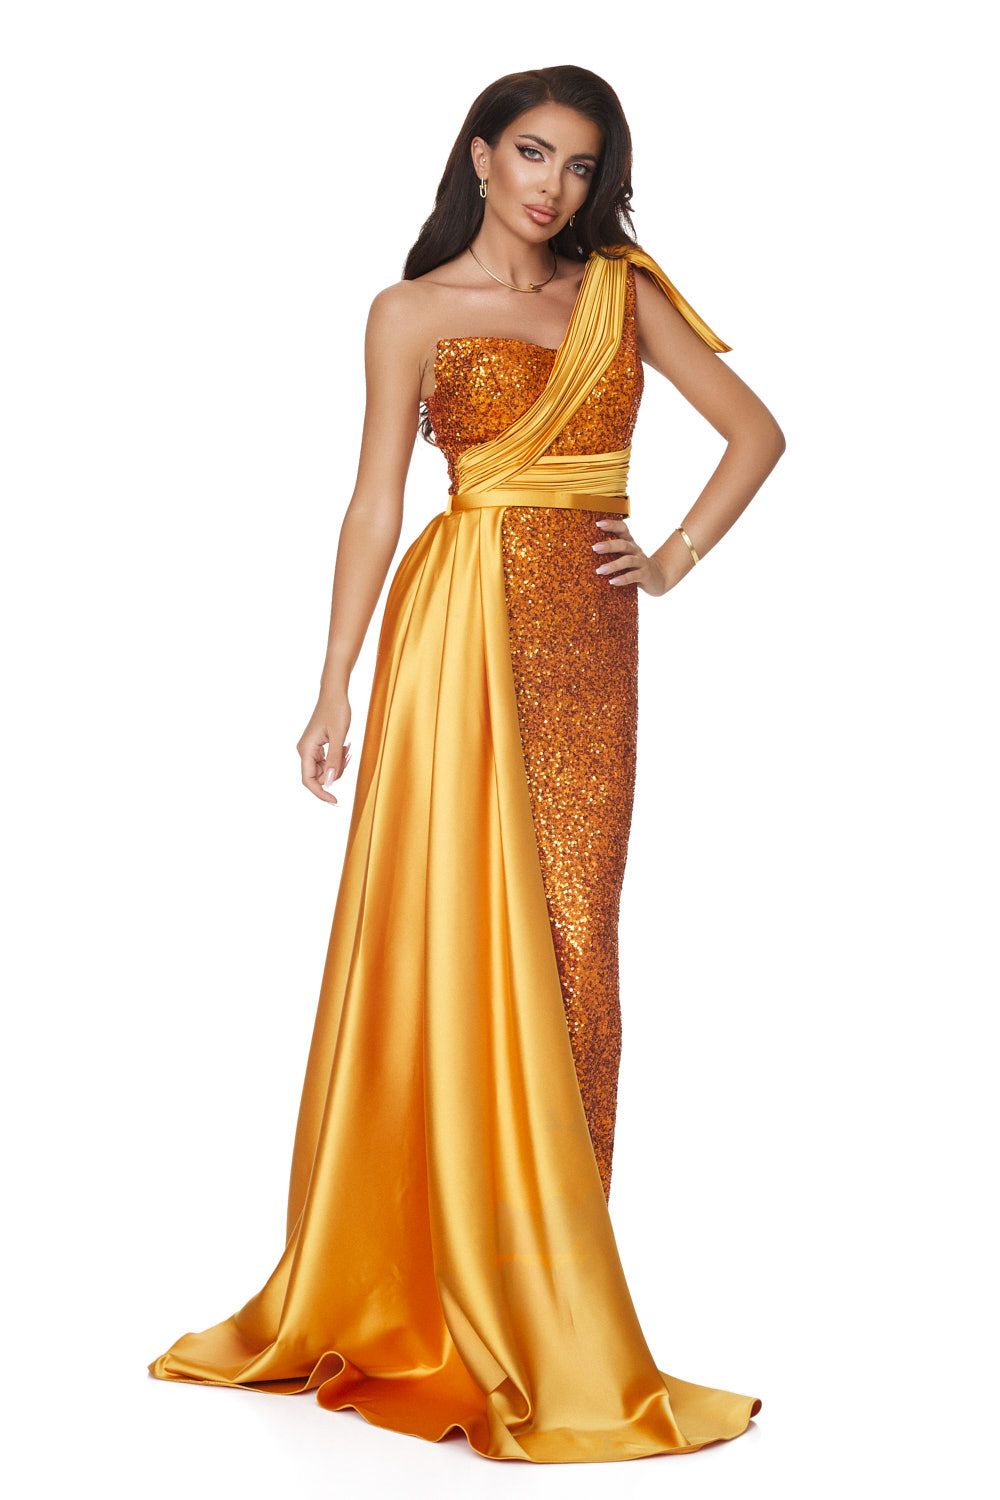 Adrianne Bogas hosszú, arany színű női ruha